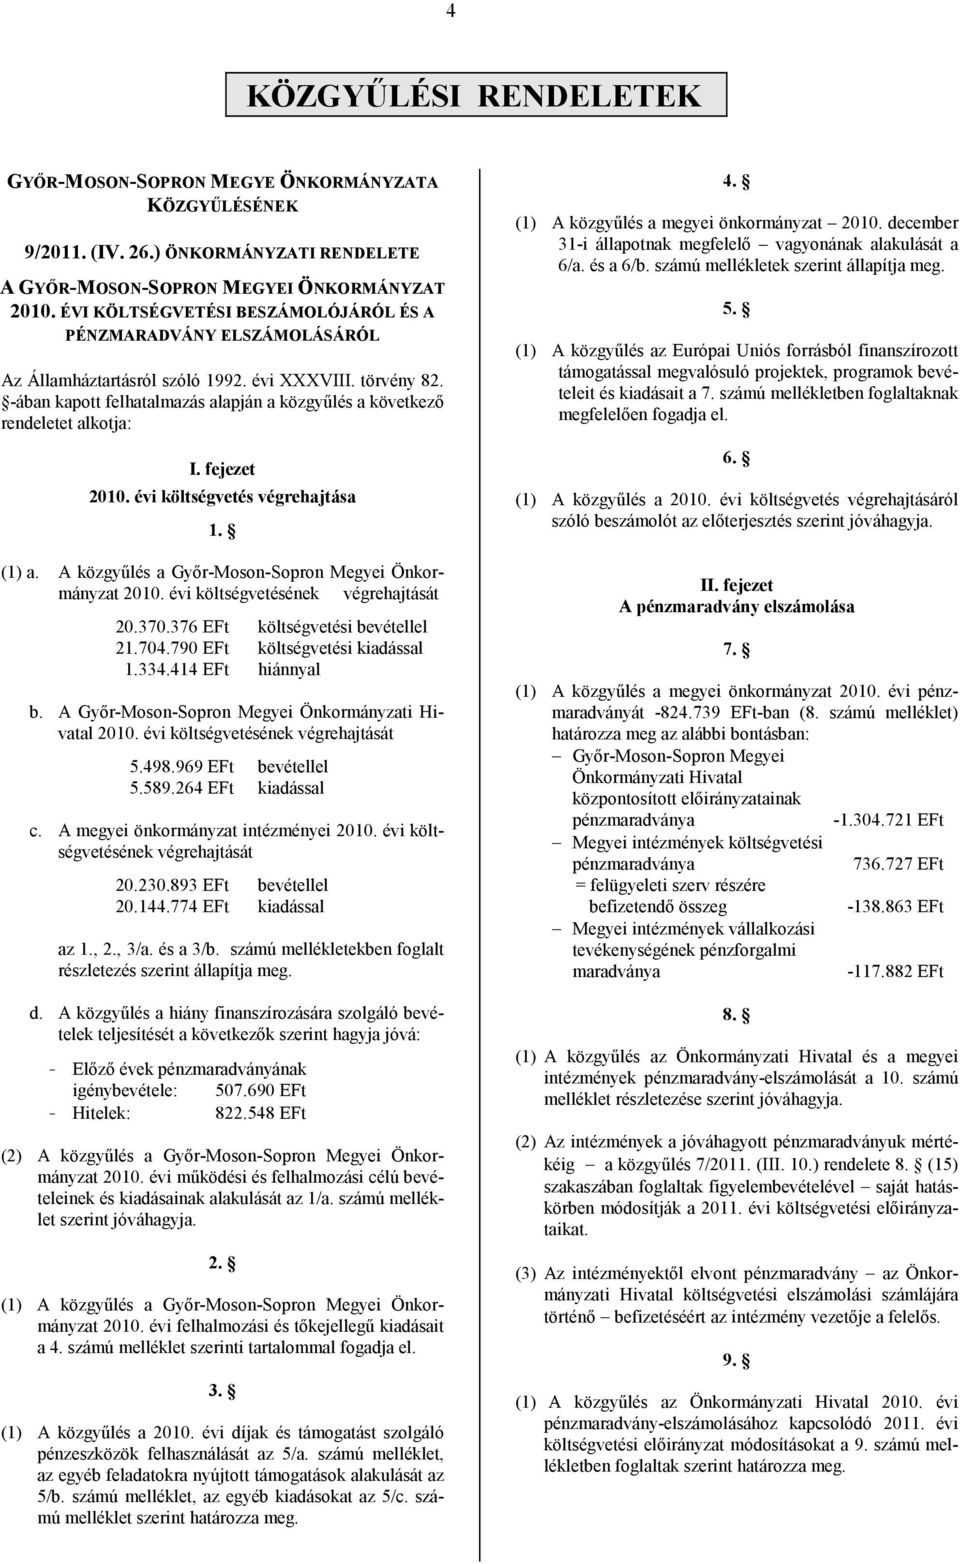 -ában kapott felhatalmazás alapján a közgyűlés a következő rendeletet alkotja: I. fejezet 2010. évi költségvetés végrehajtása 1. (1) a. A közgyűlés a Győr-Moson-Sopron Megyei Önkormányzat 2010.